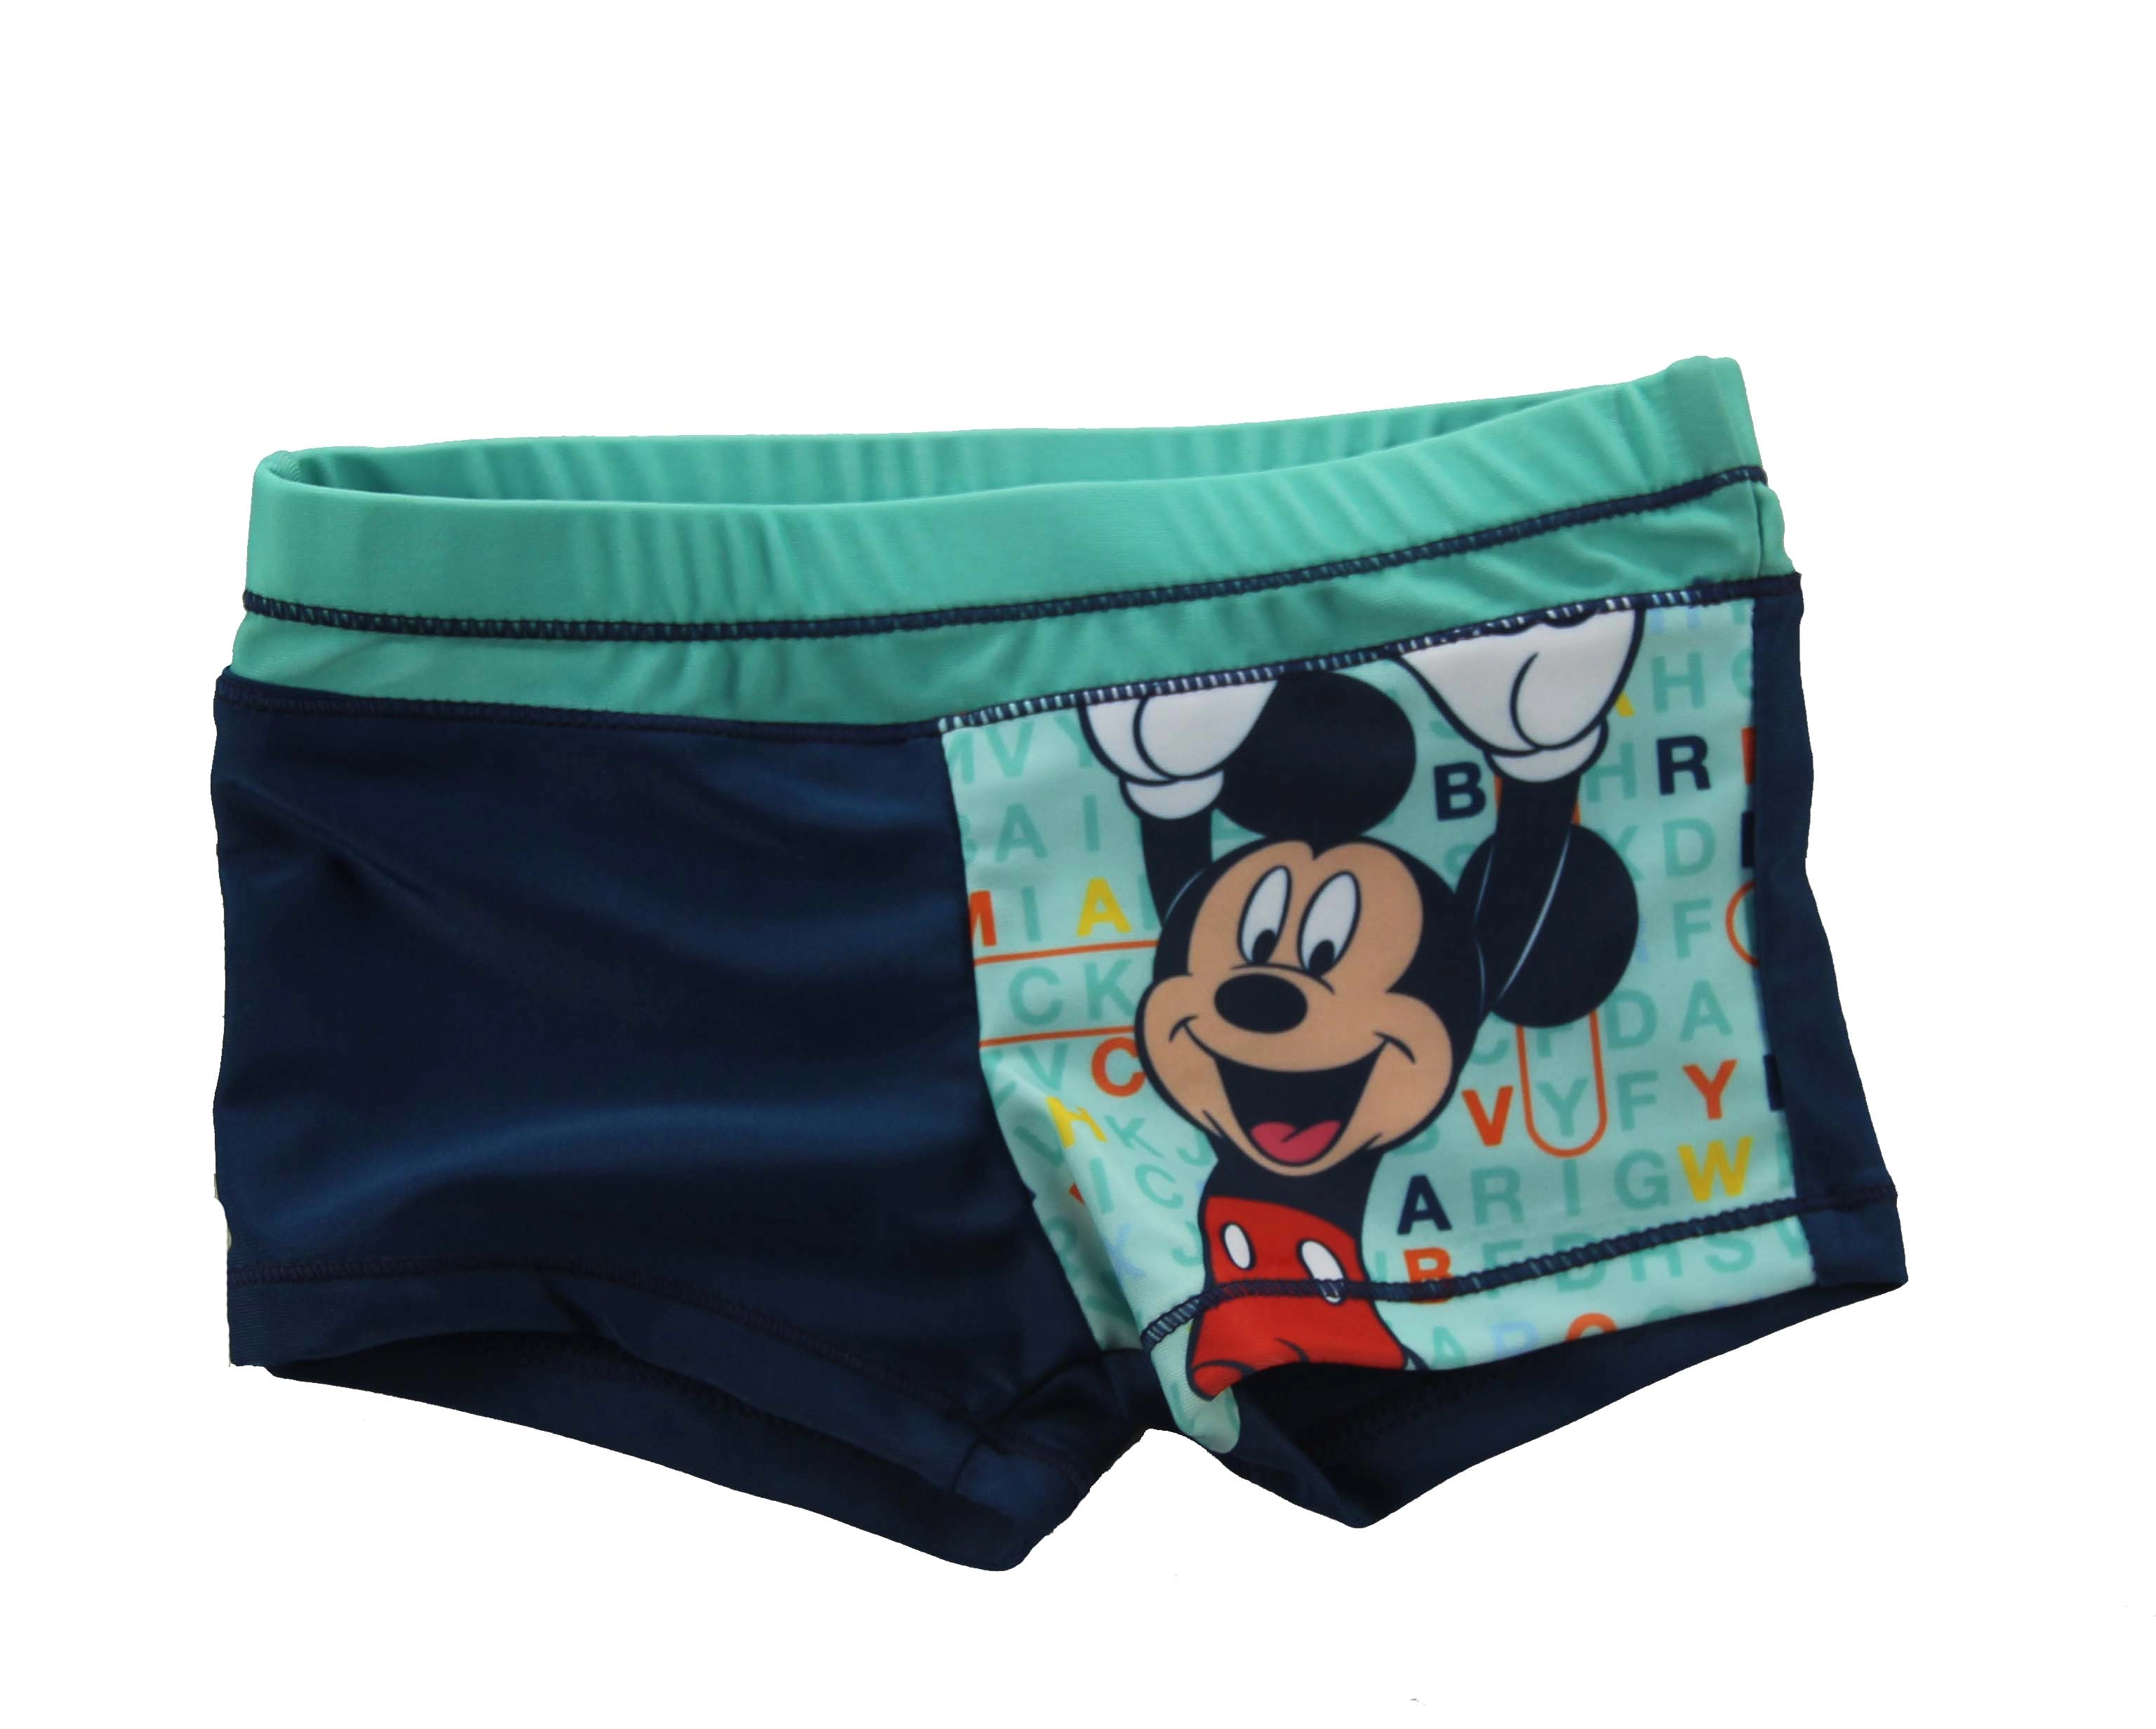 Bộ đồ ngắn dành cho bé trai màu xanh da trời và xanh lá cây của chuột Mickey